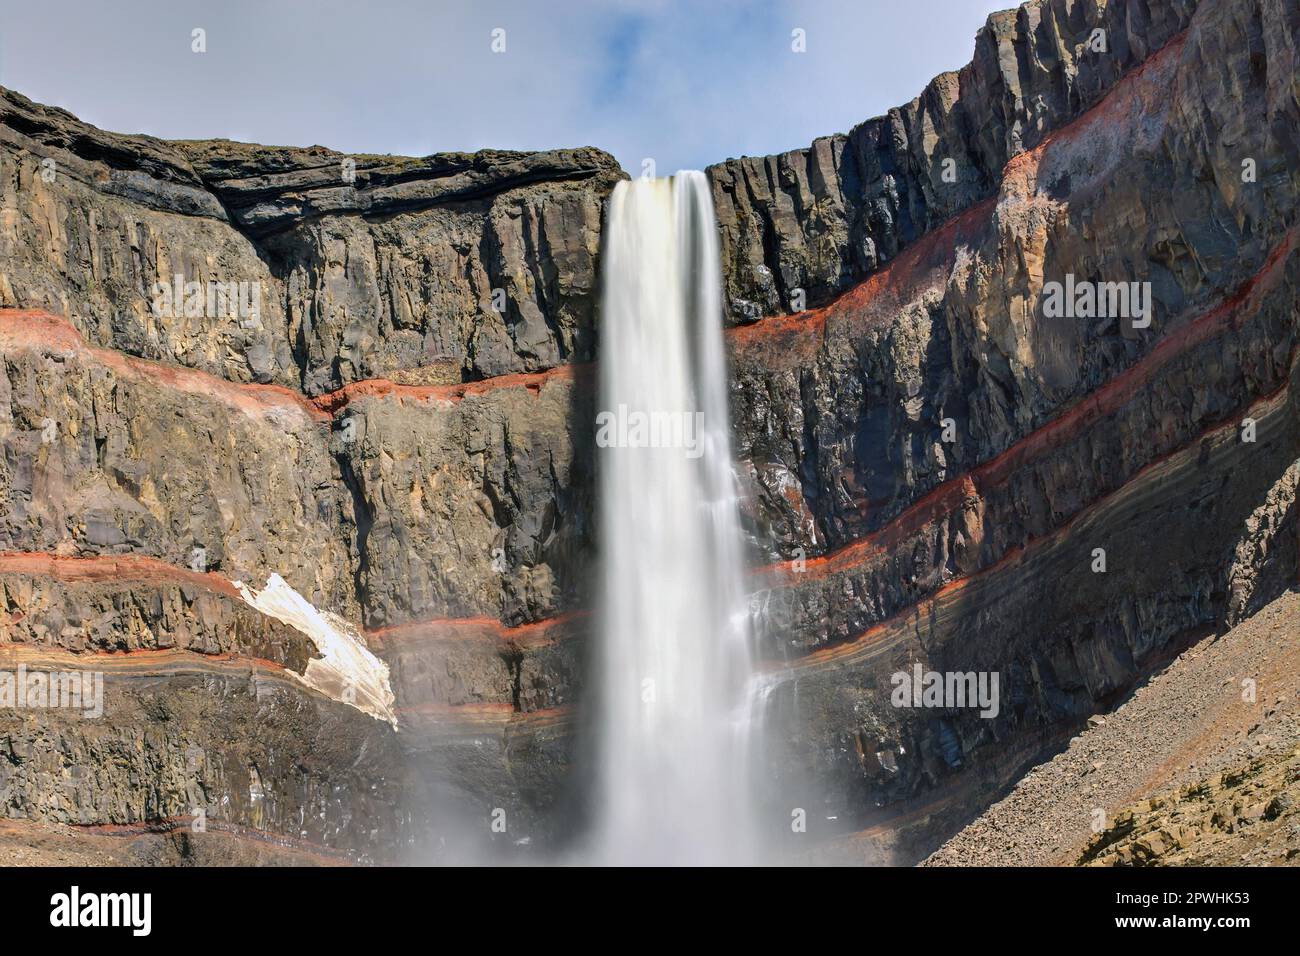 La cascade de Hengifoss en Islande avec ses rayures rouges Banque D'Images